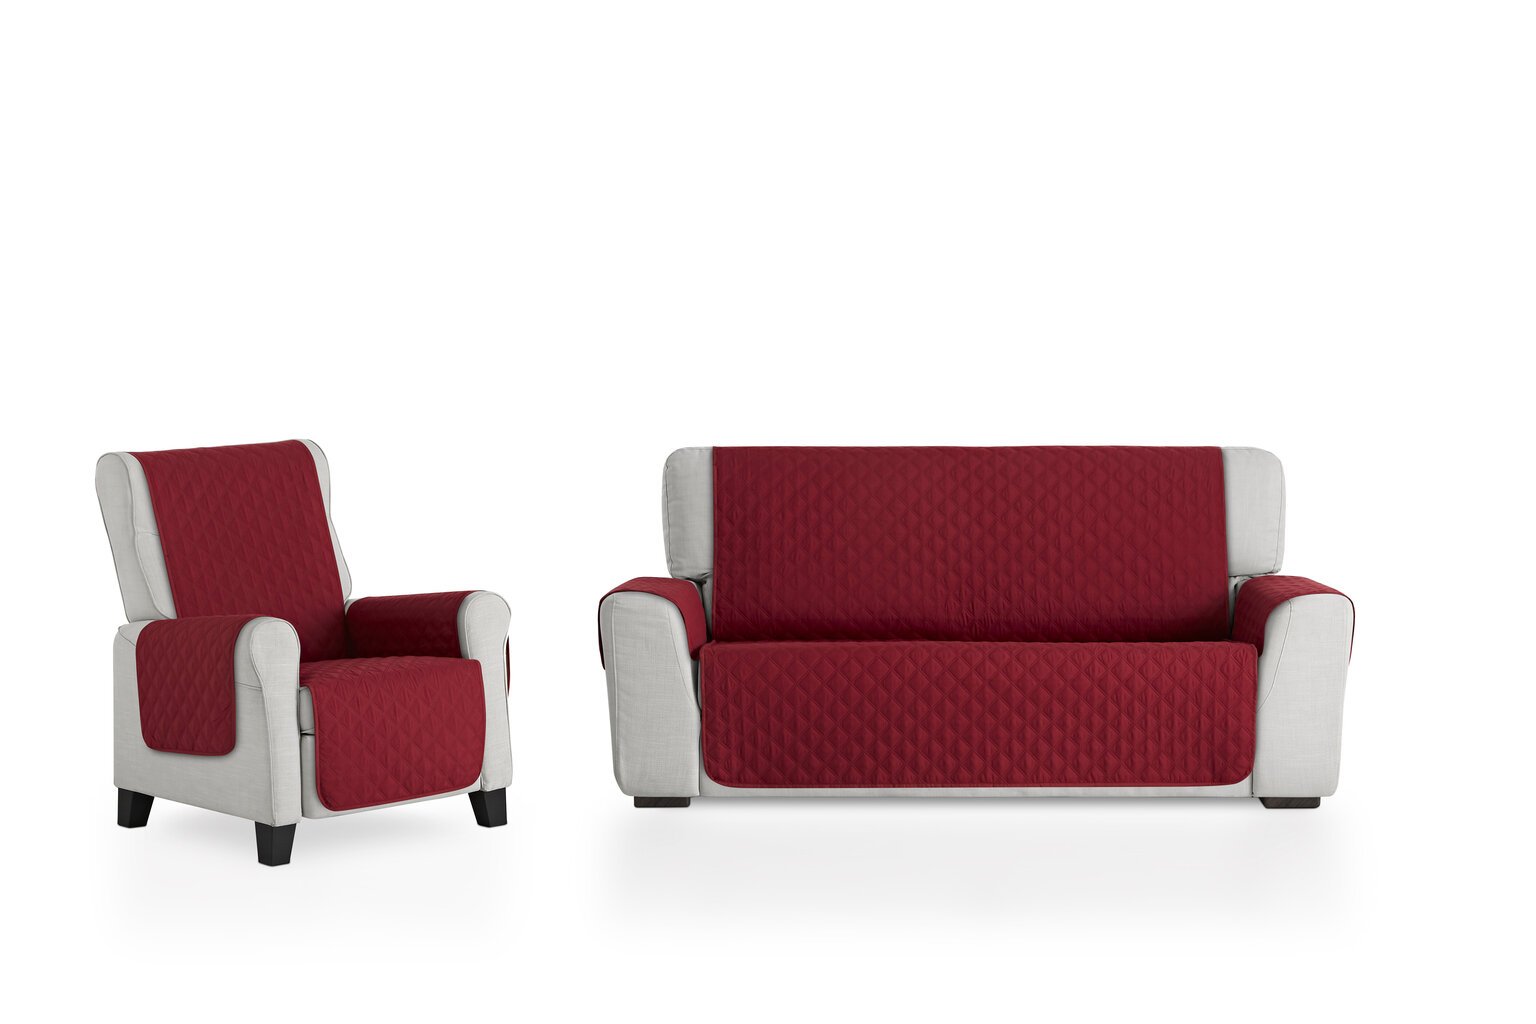 Bestcovers stora vienpusė sofos apsauga 160x195cm, raudonos spalvos kaina ir informacija | Baldų užvalkalai | pigu.lt